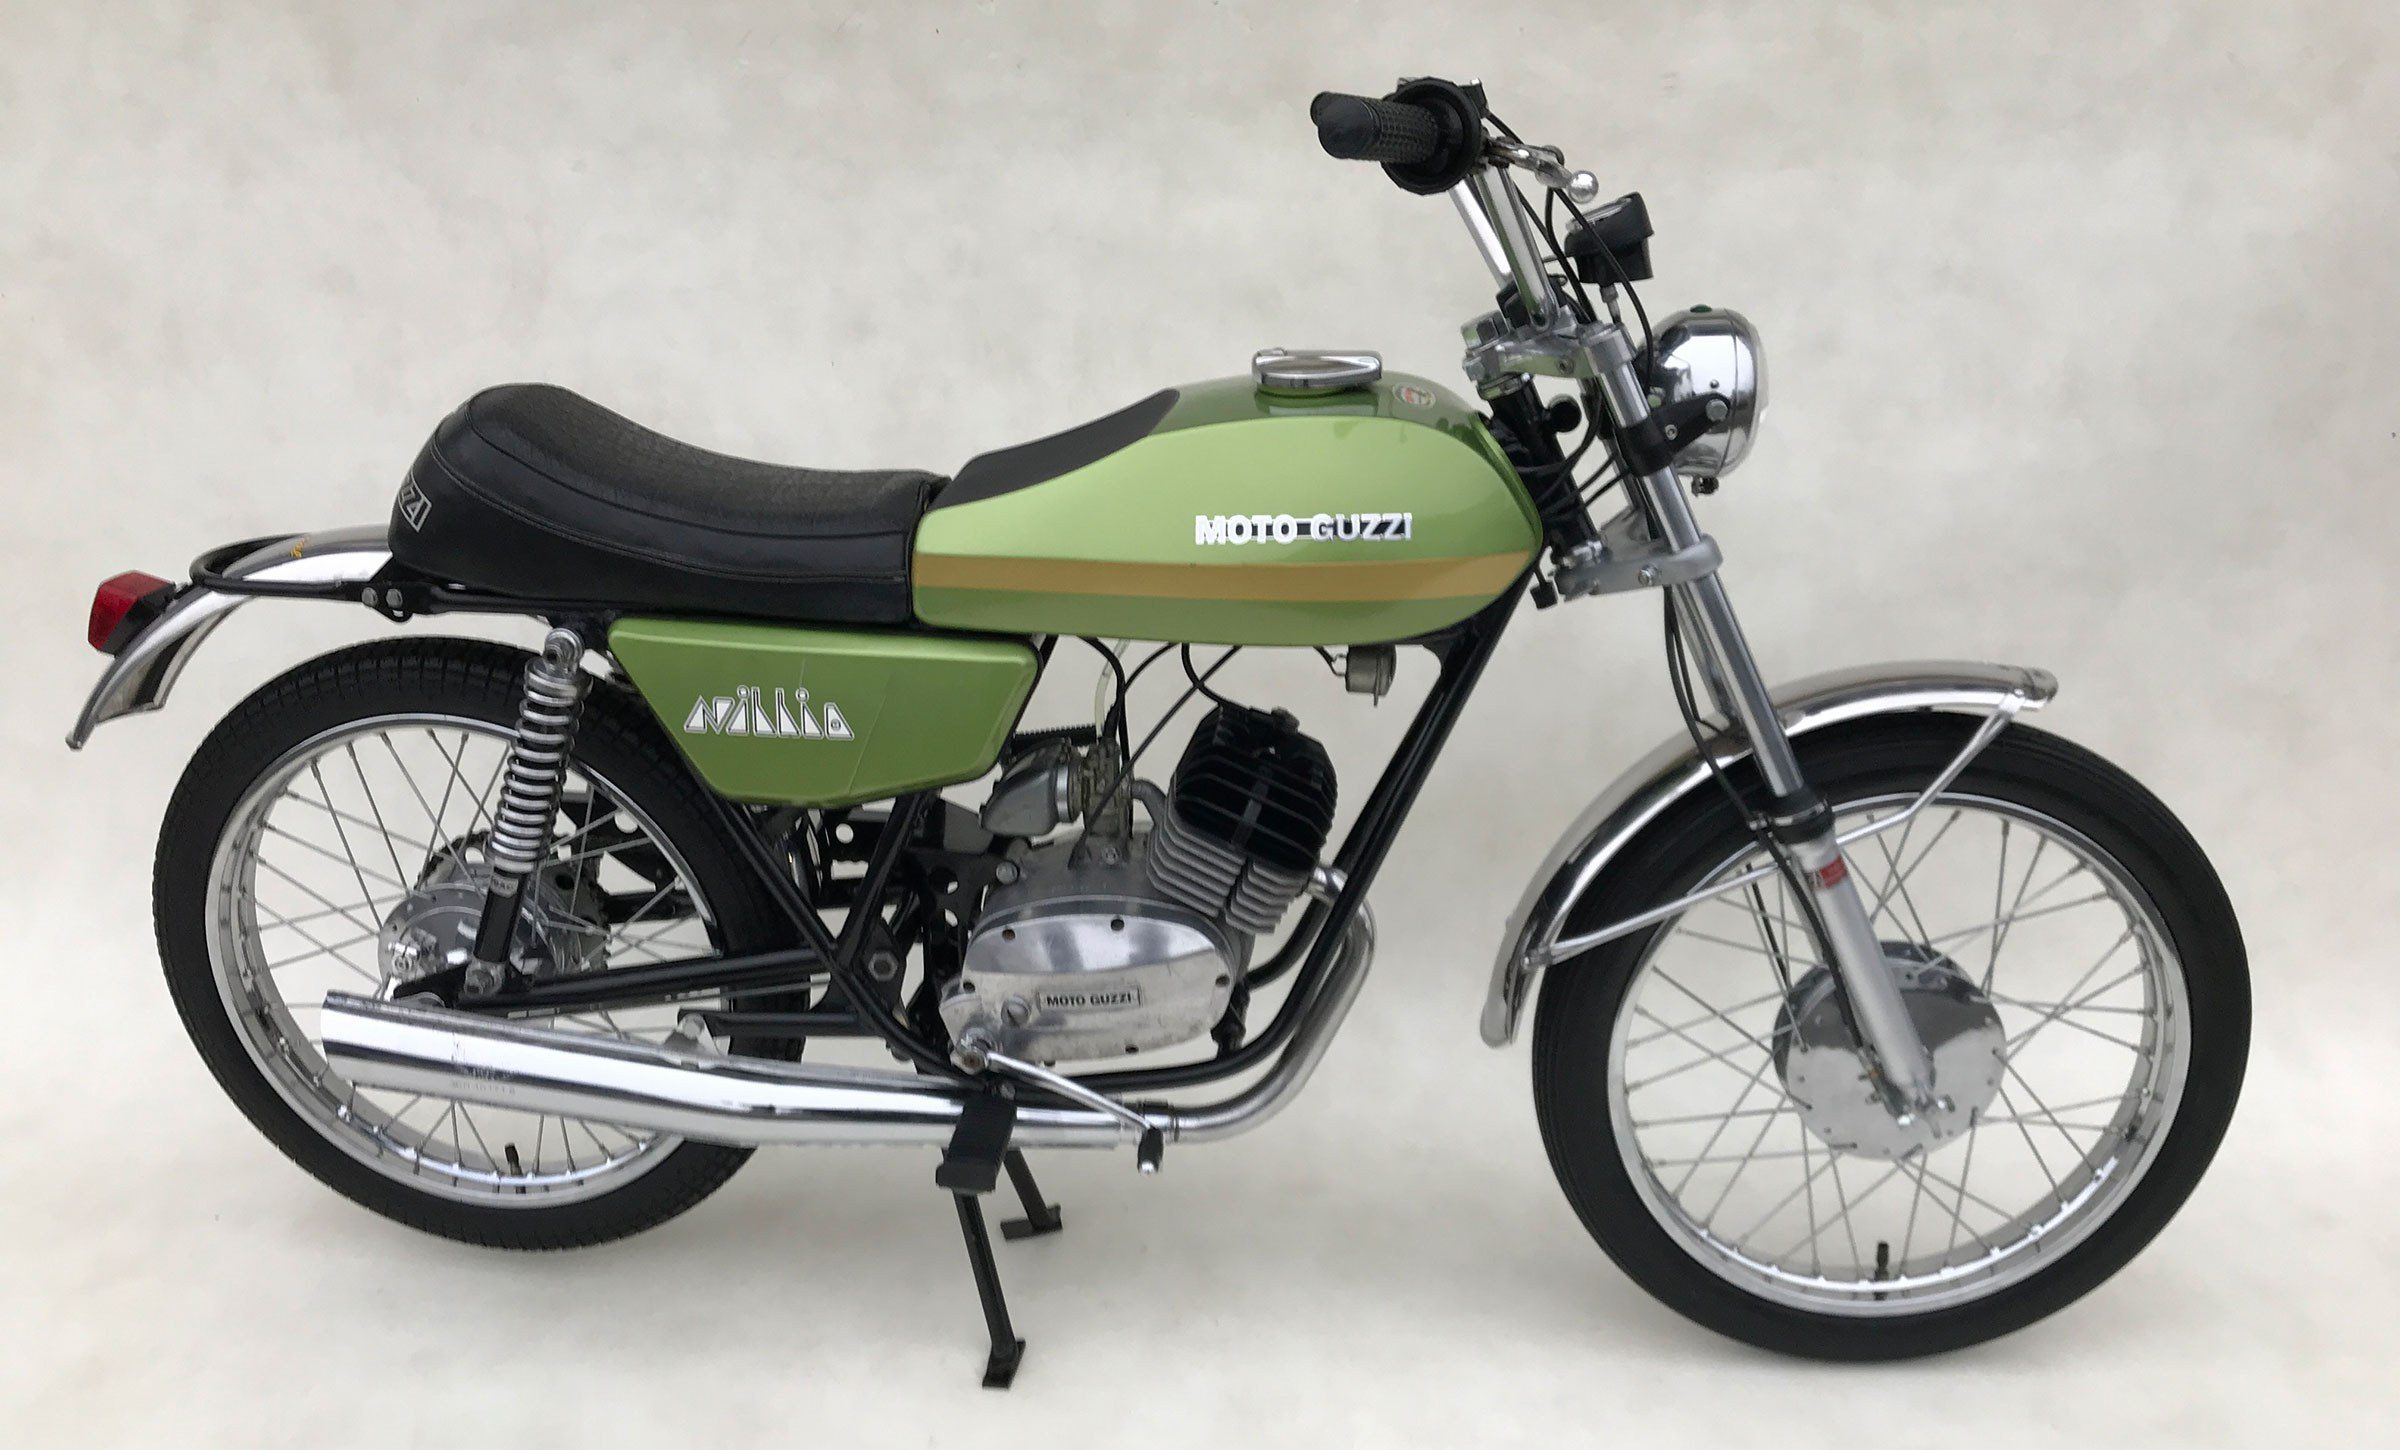 Moto guzzi gs50 nibbio 1974 1